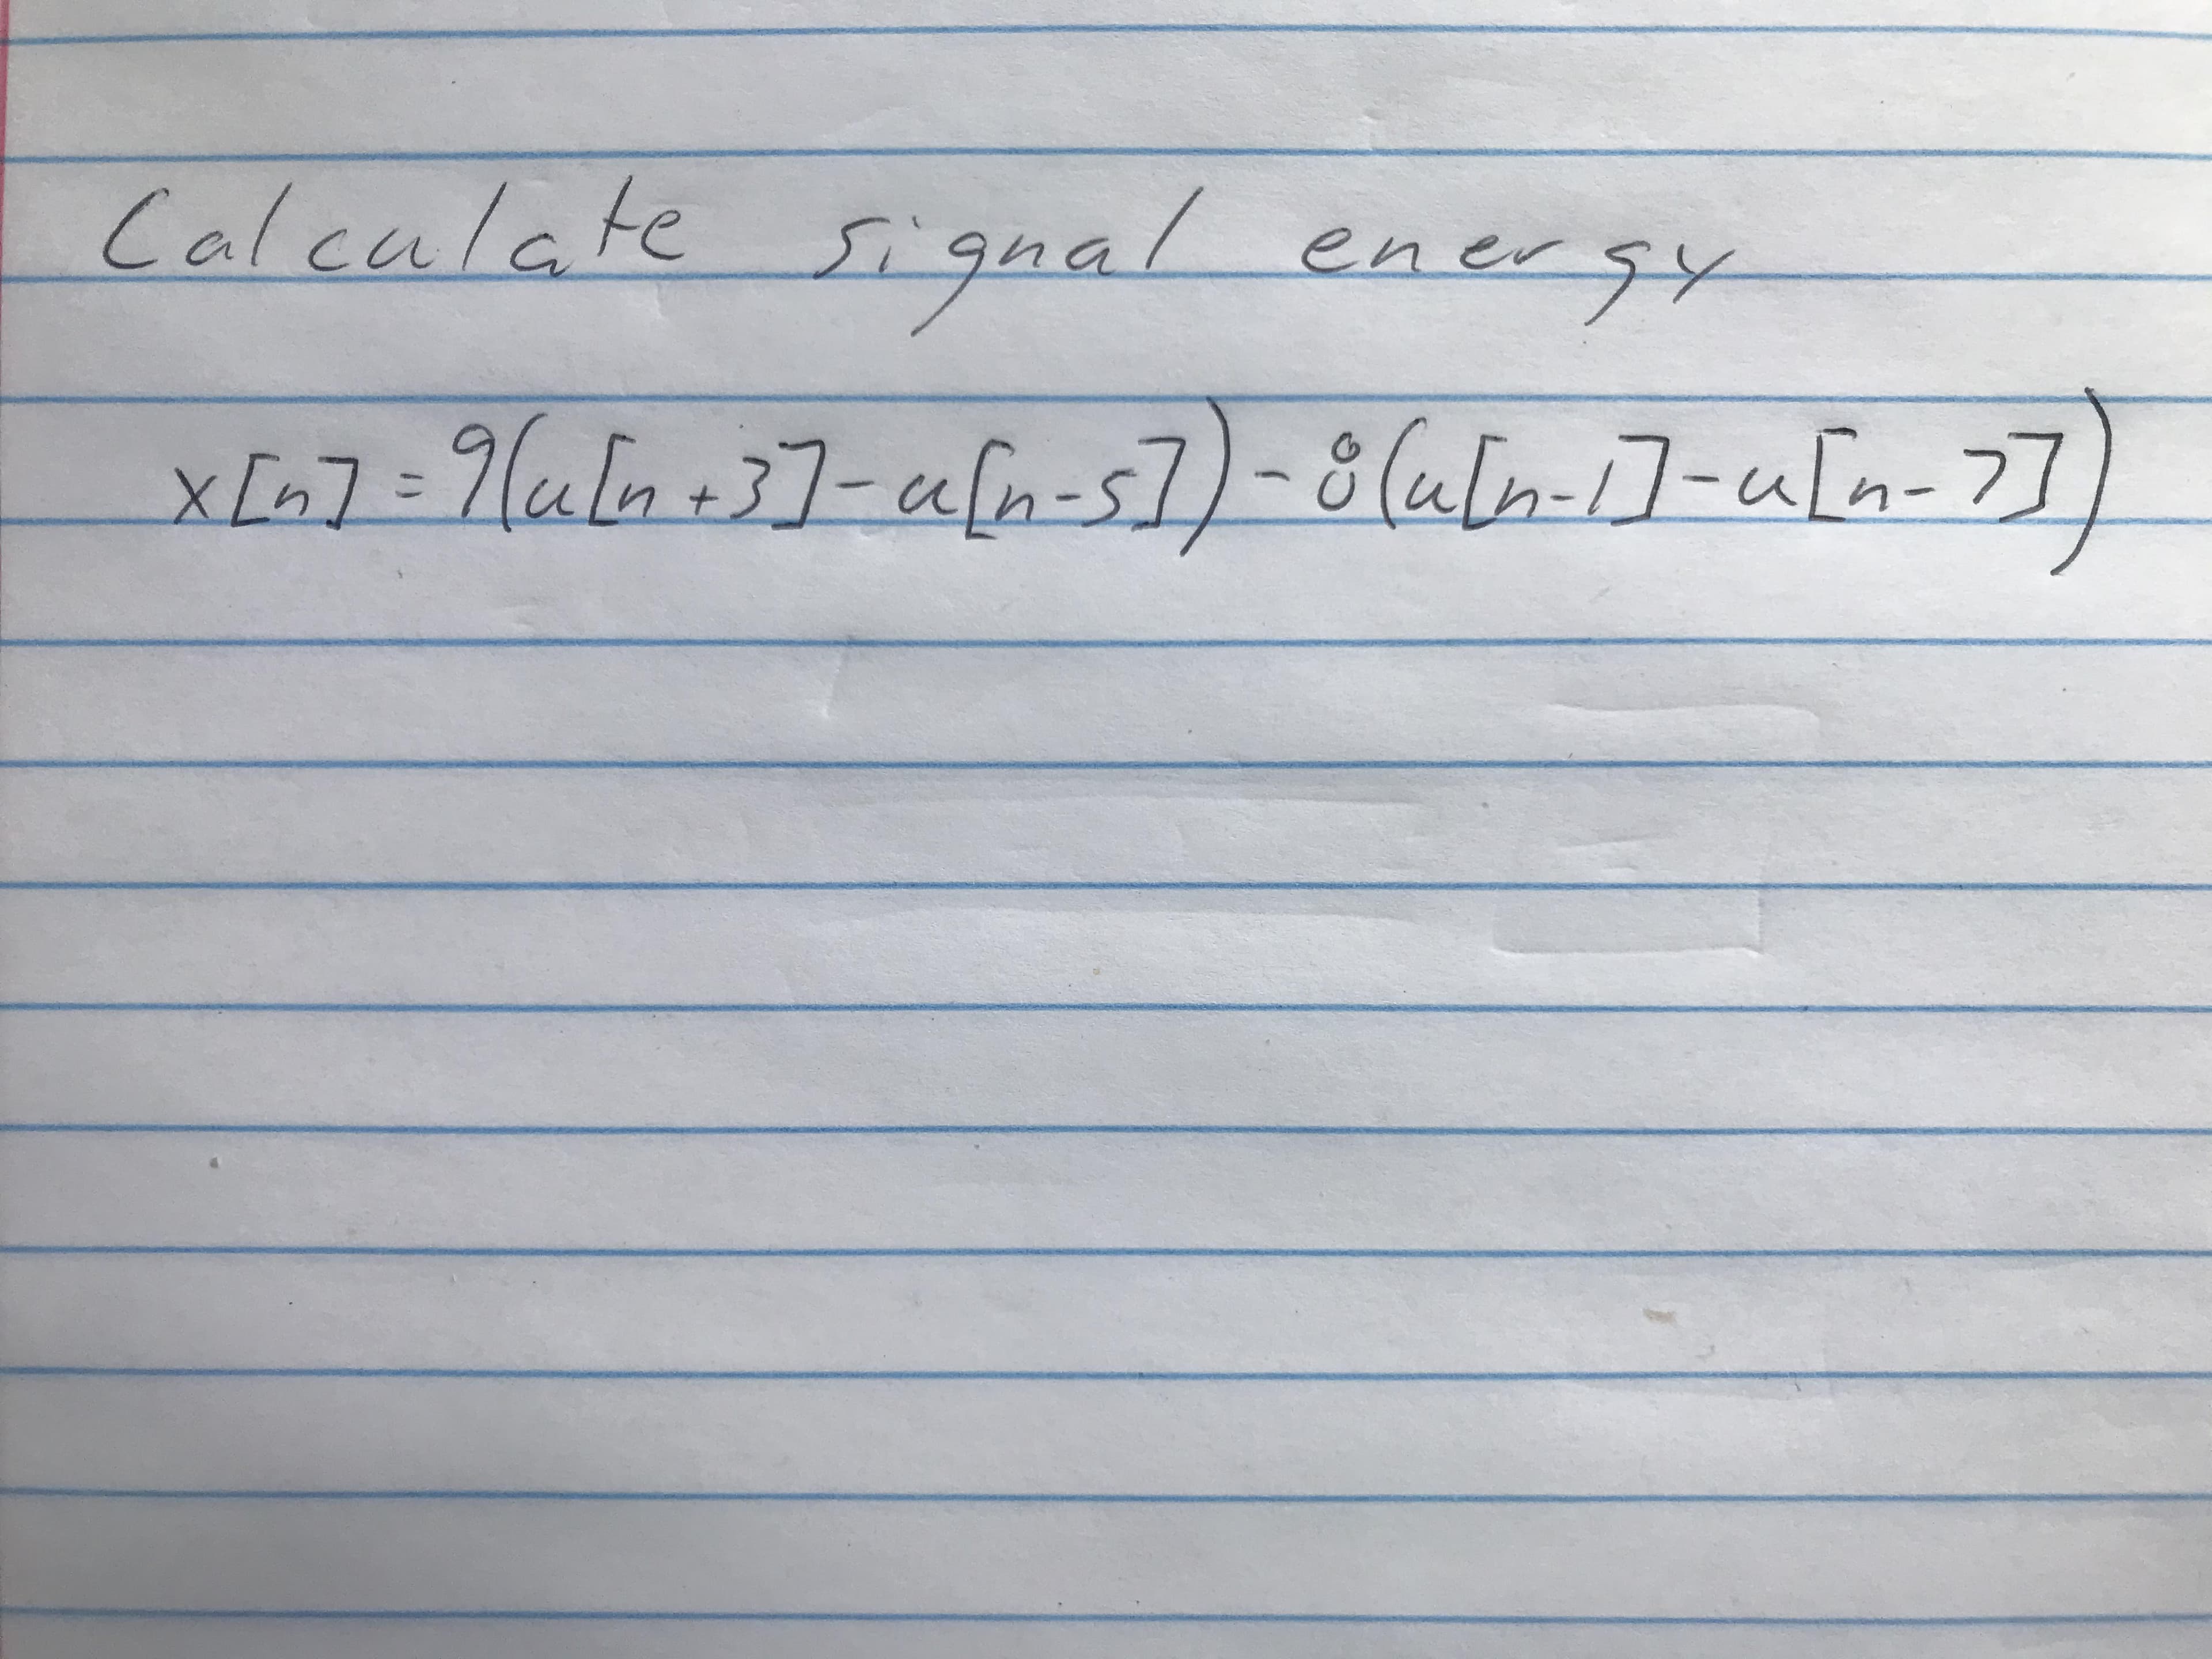 Calculate
enersy
x[n]:
+3]
In-
